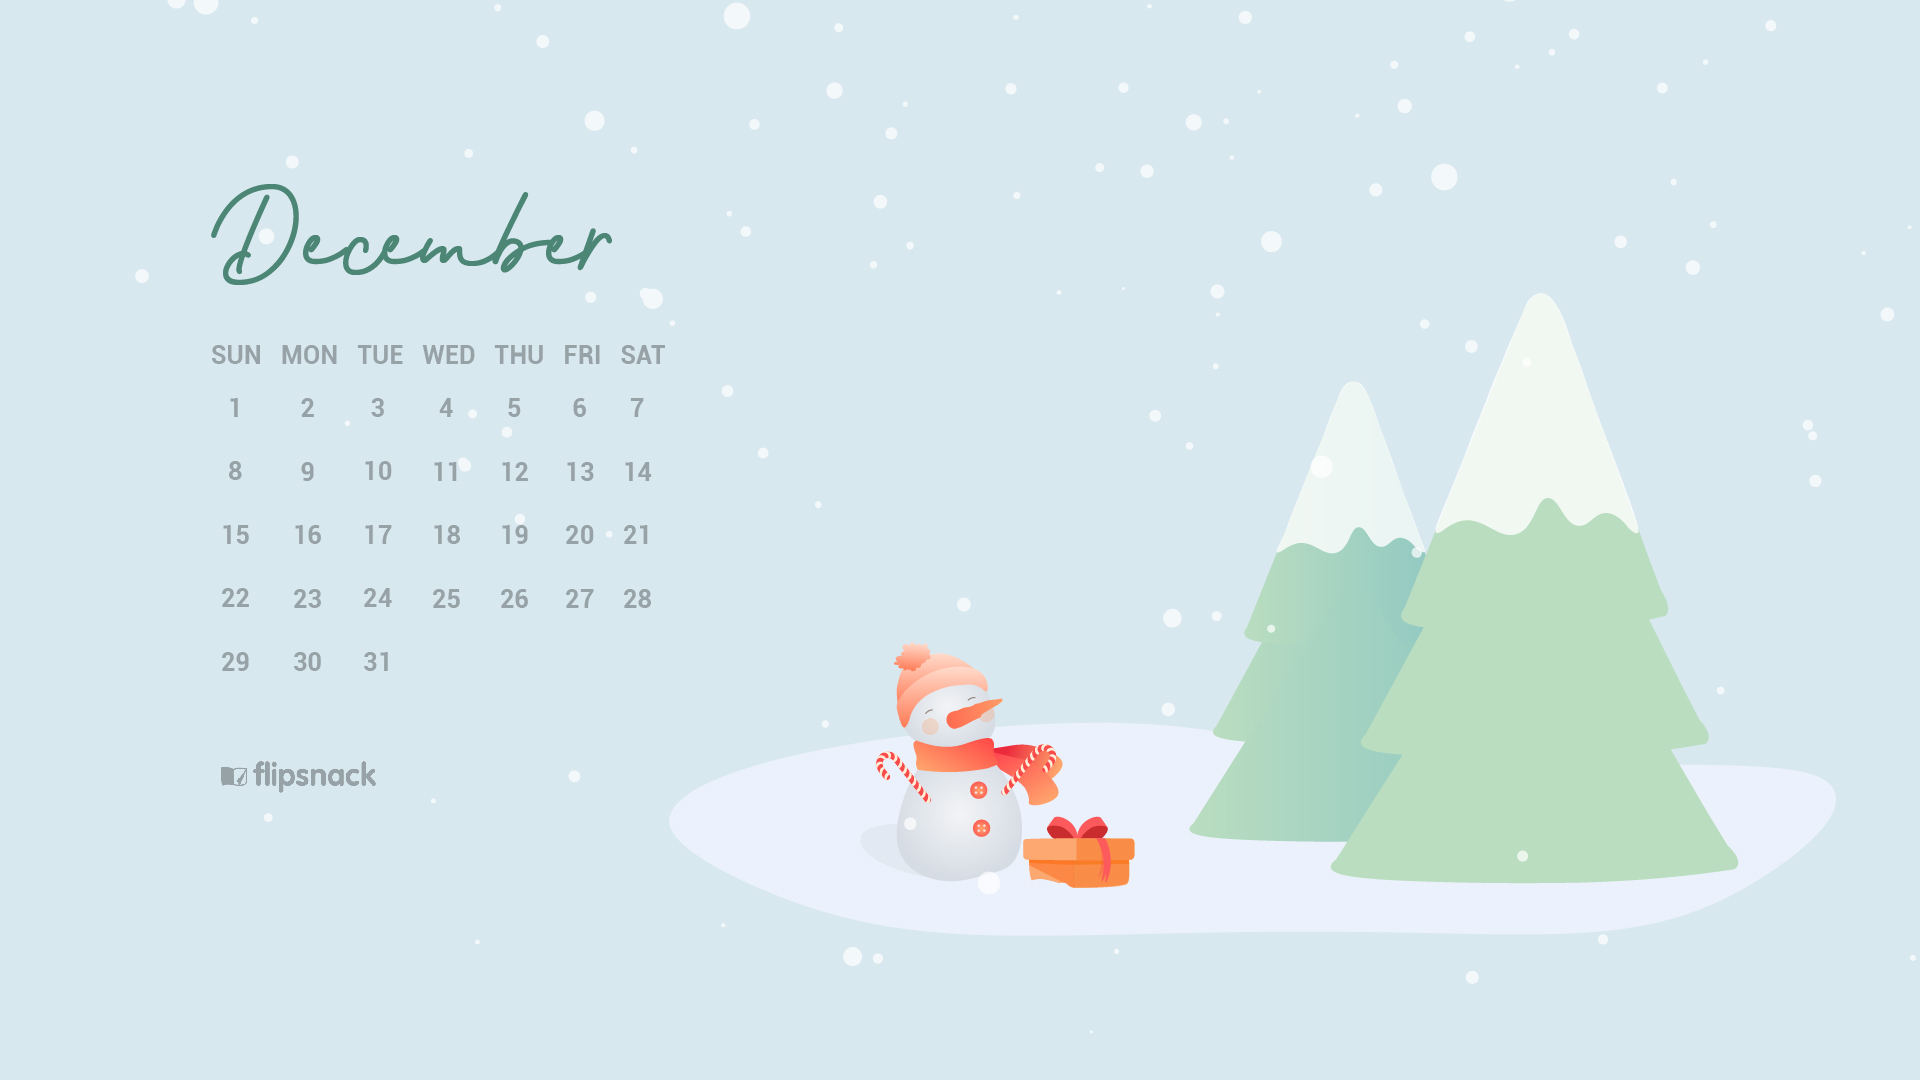 12月のカレンダーの壁紙,テキスト,カレンダー,クリスマス・イブ,クリスマスツリー,木